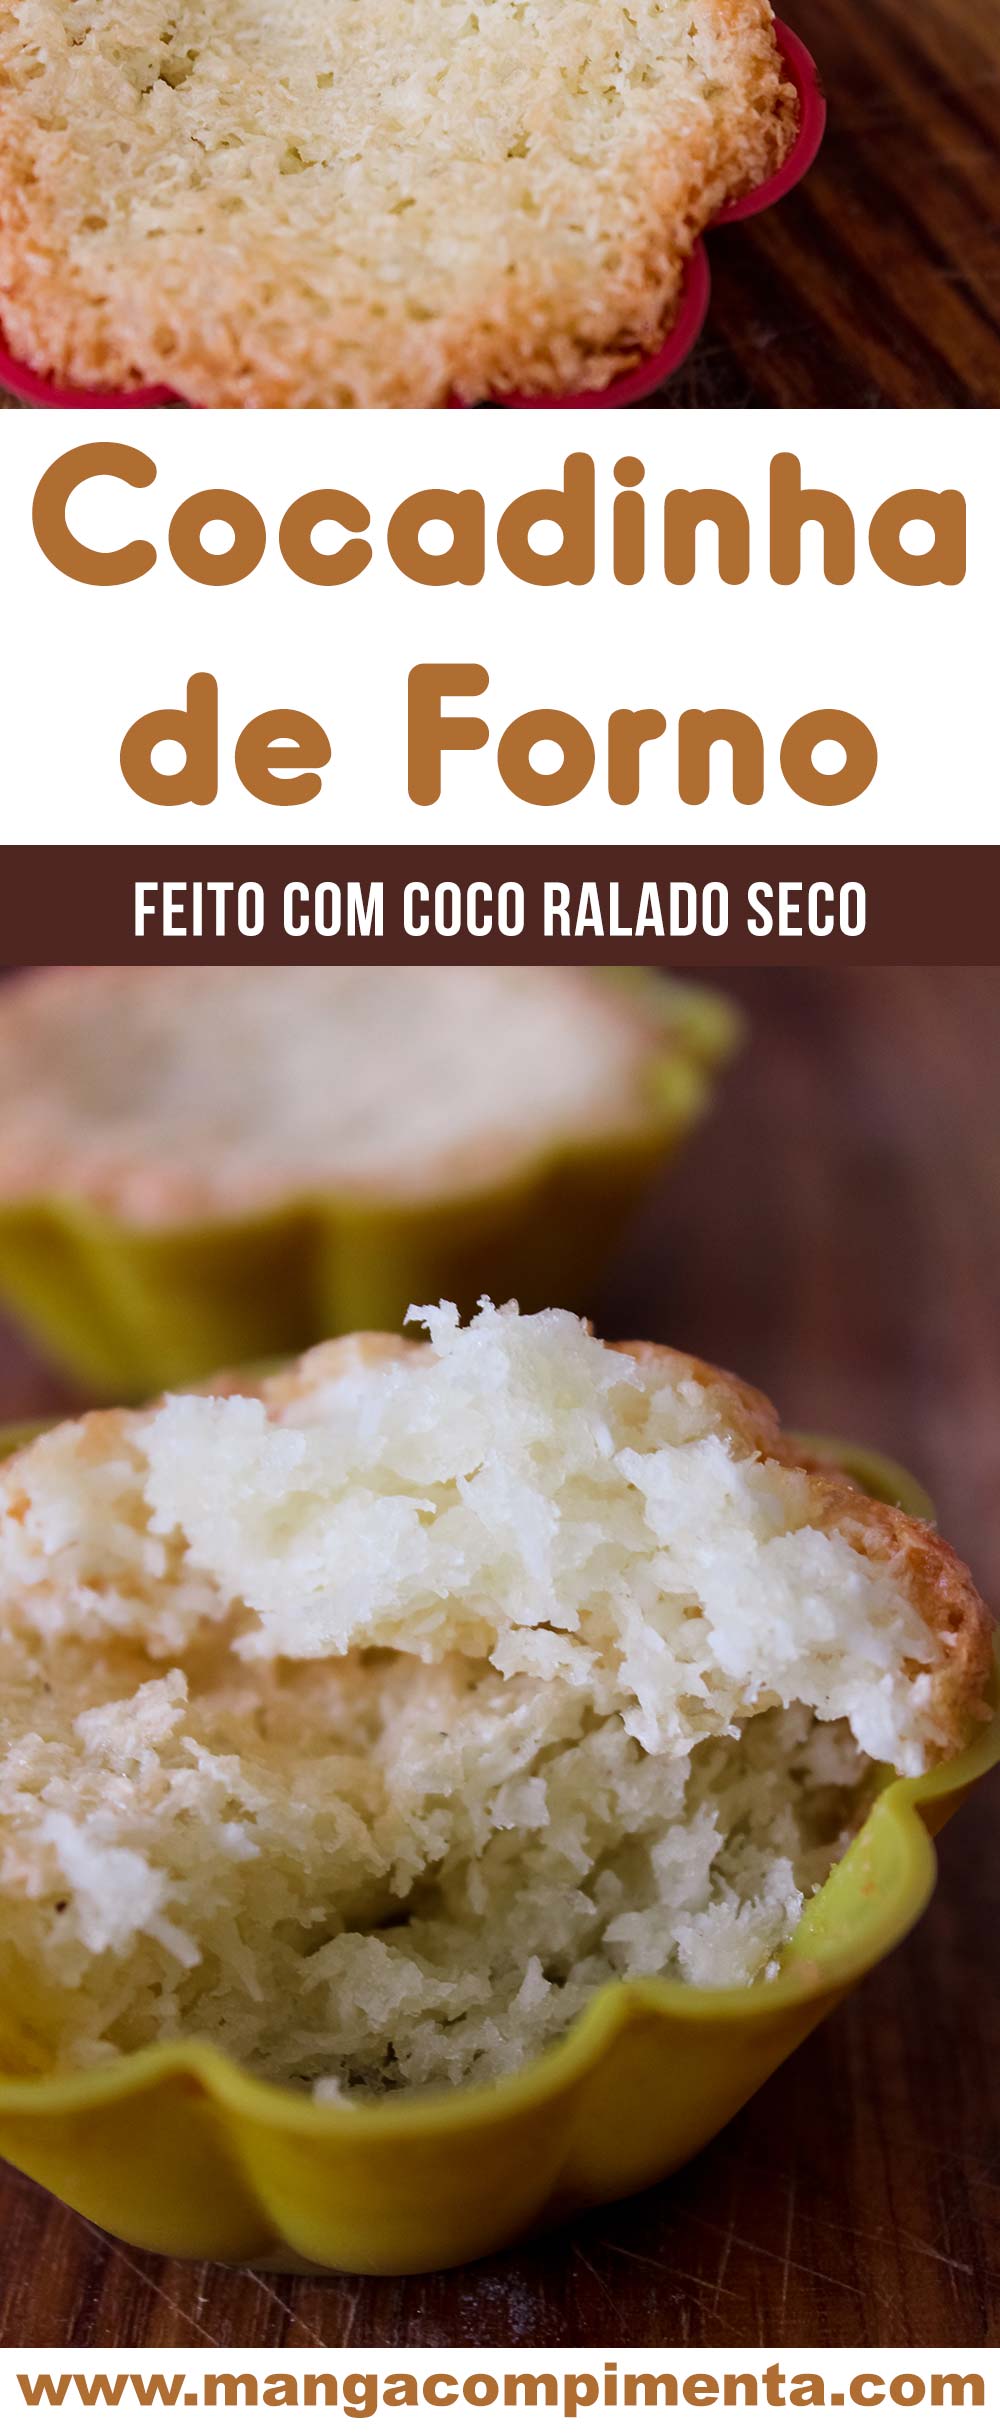 Cocadinha de Forno com Coco Ralado Seco - um docinho caseiro super fácil de fazer e delicioso de comer!